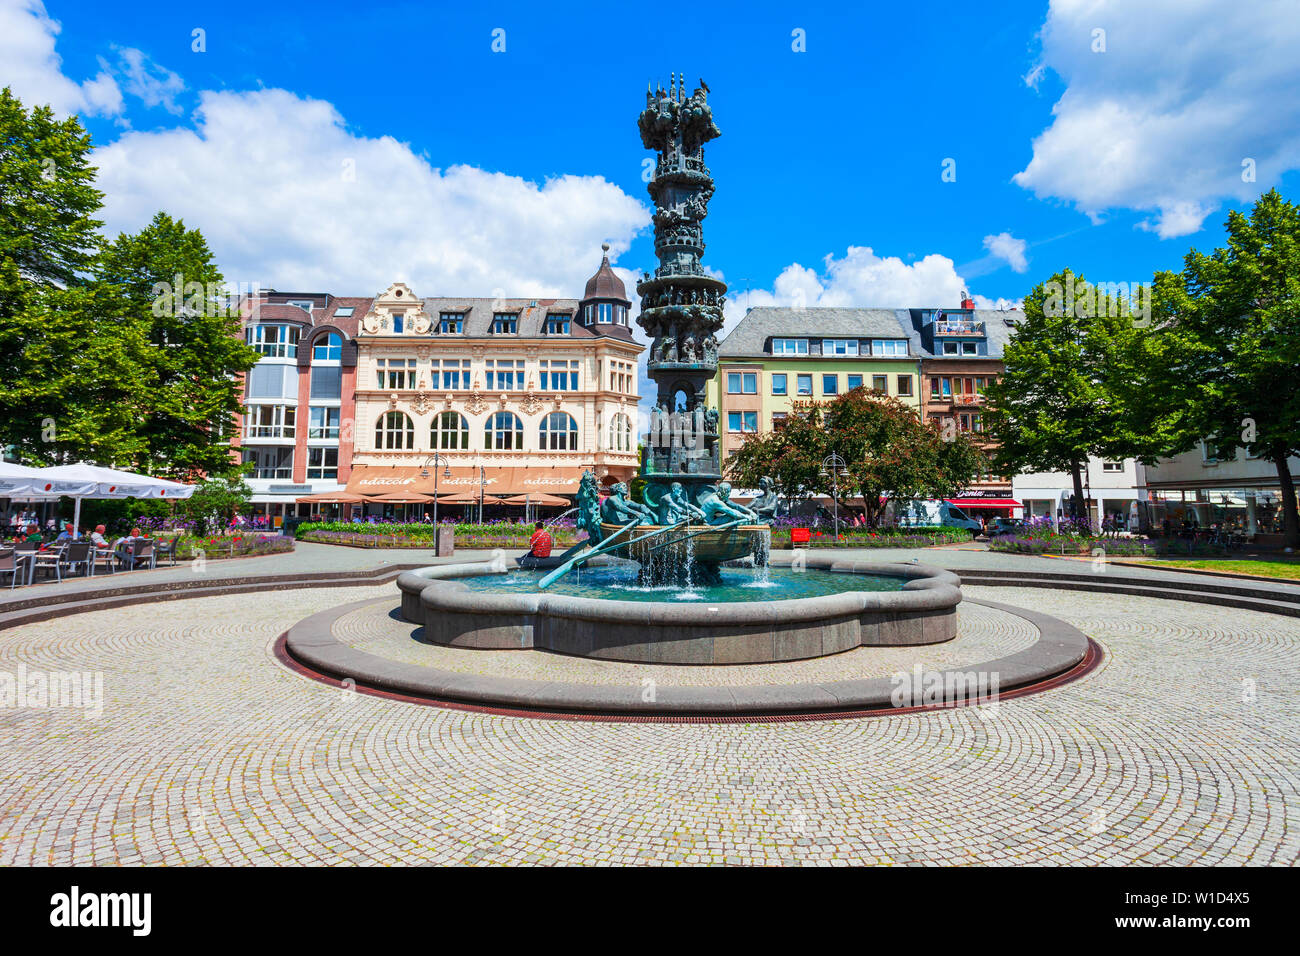 KOBLENZ, Deutschland - Juni 27, 2018: Geschichte Spalte oder Historiensaule im Zentrum von Koblenz Stadt in Deutschland Stockfoto